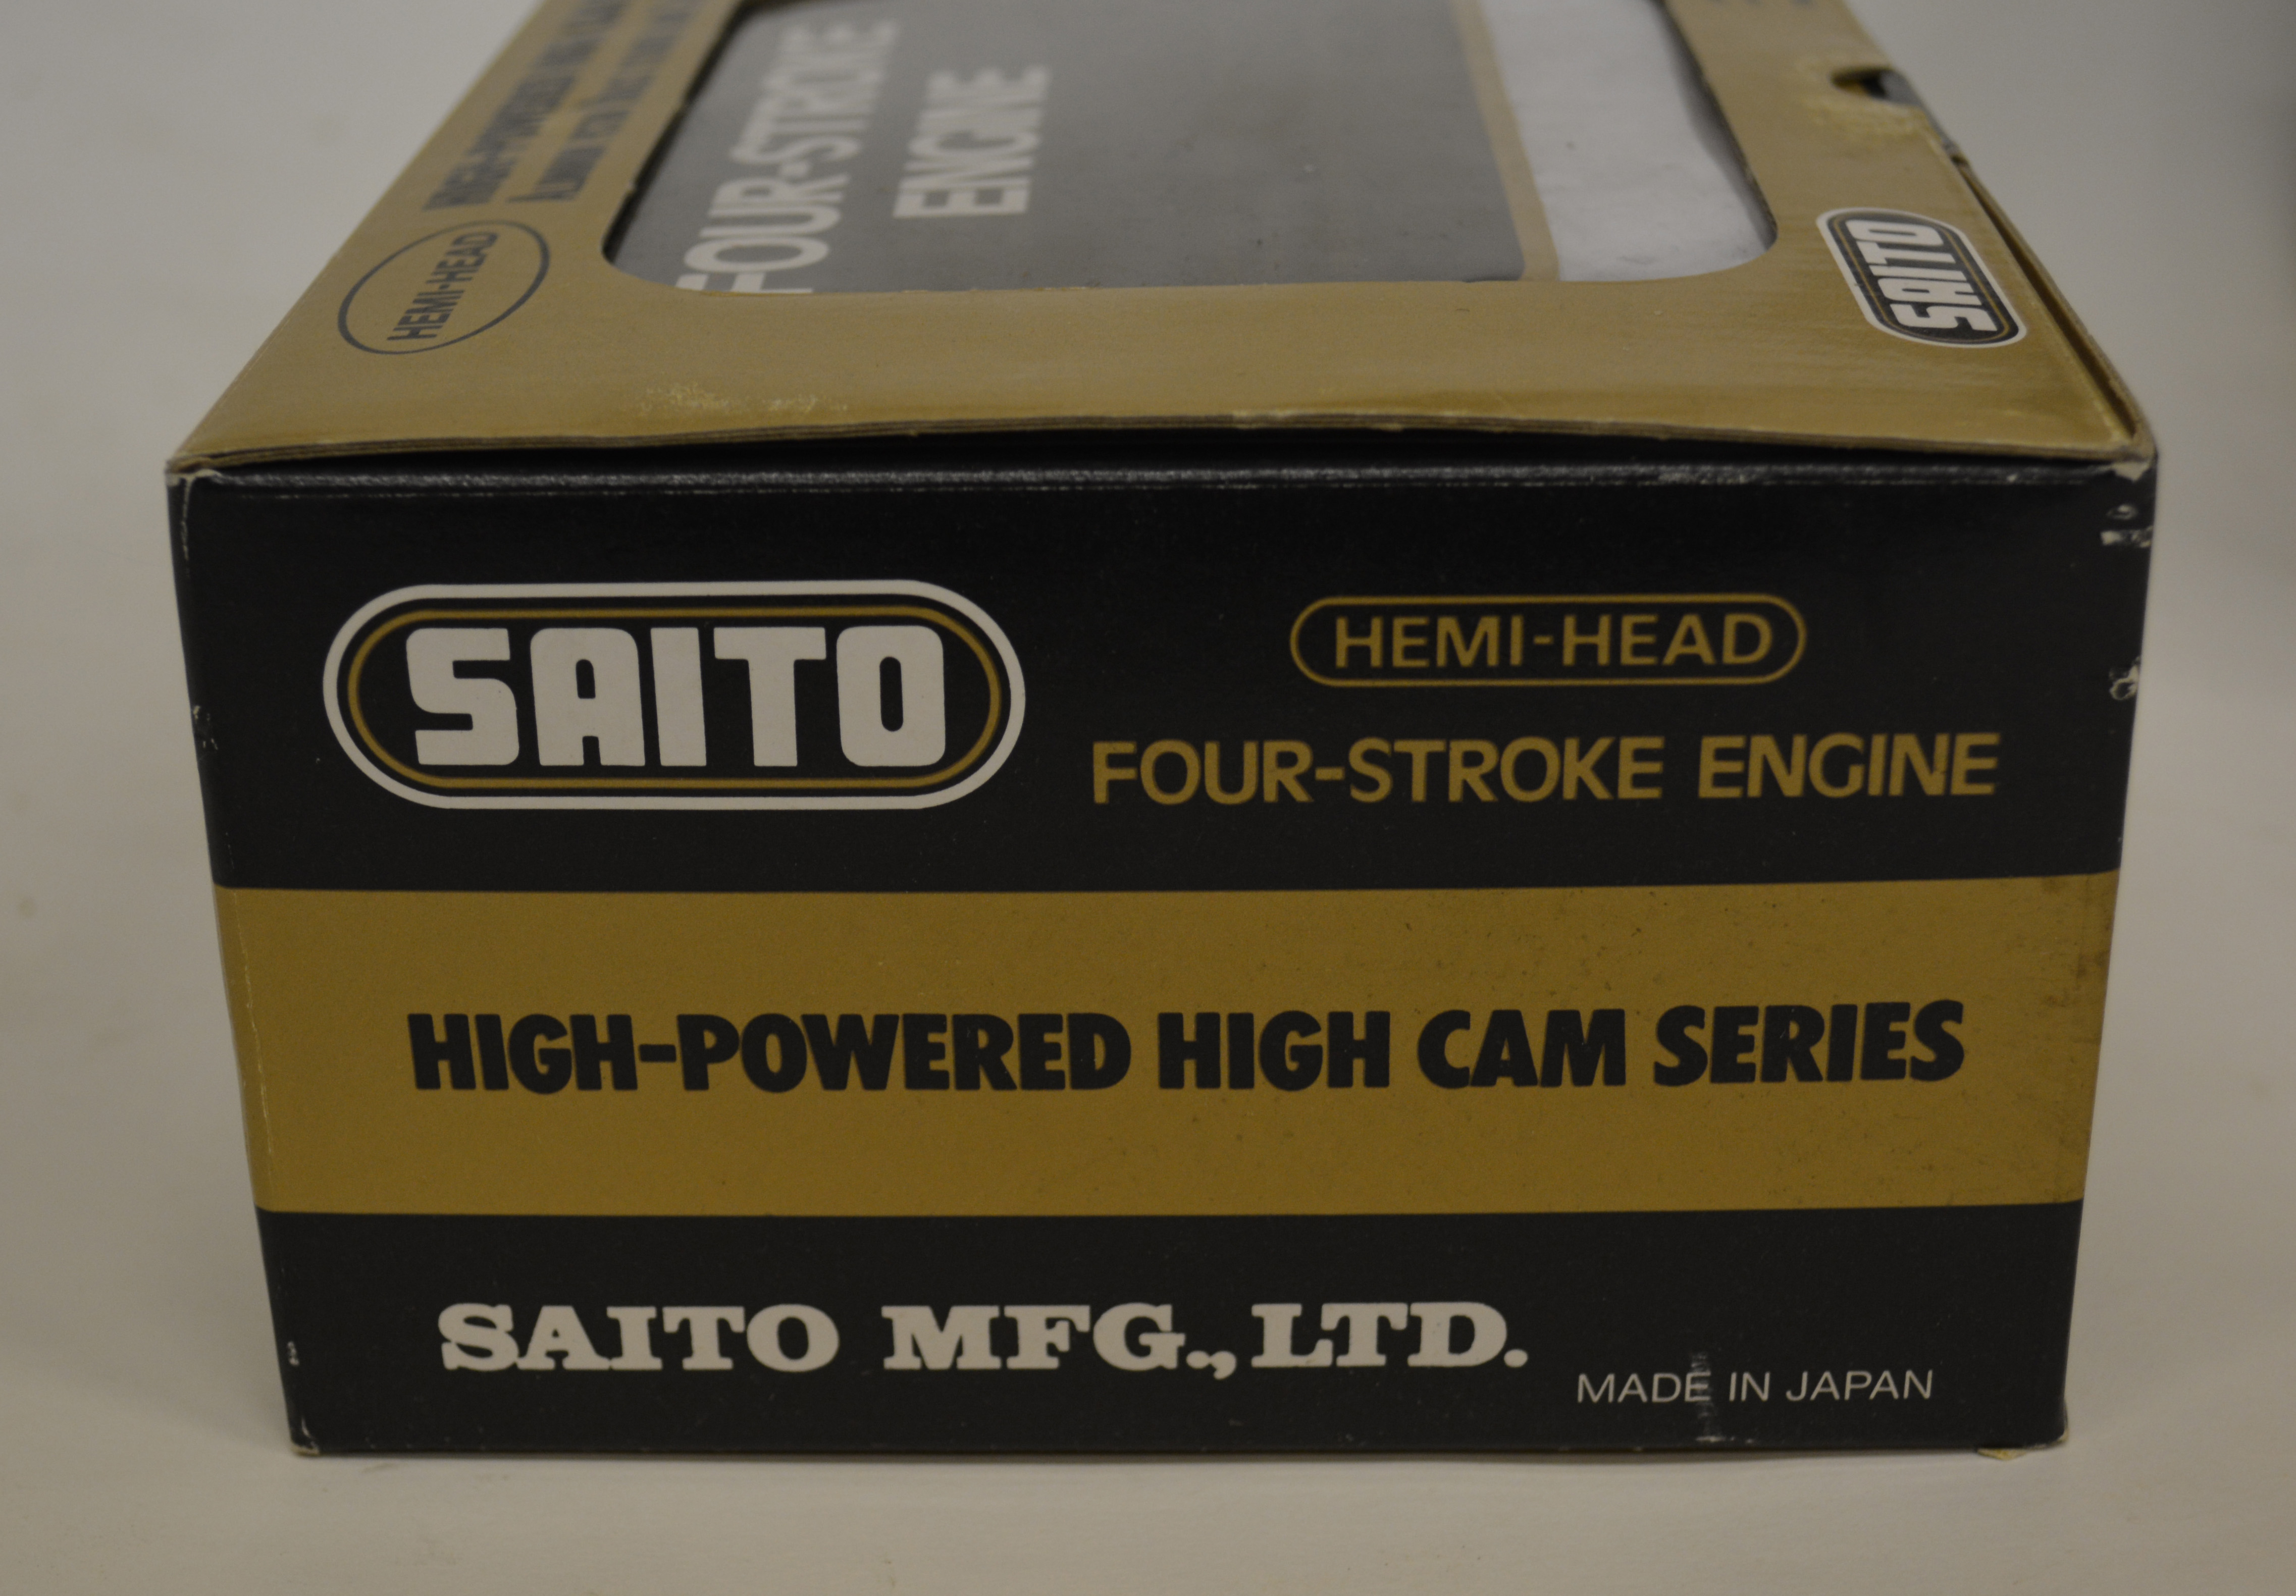 SAITO hemi head 4 stroke engine, FA-65 Golden GK Knight, new in box.